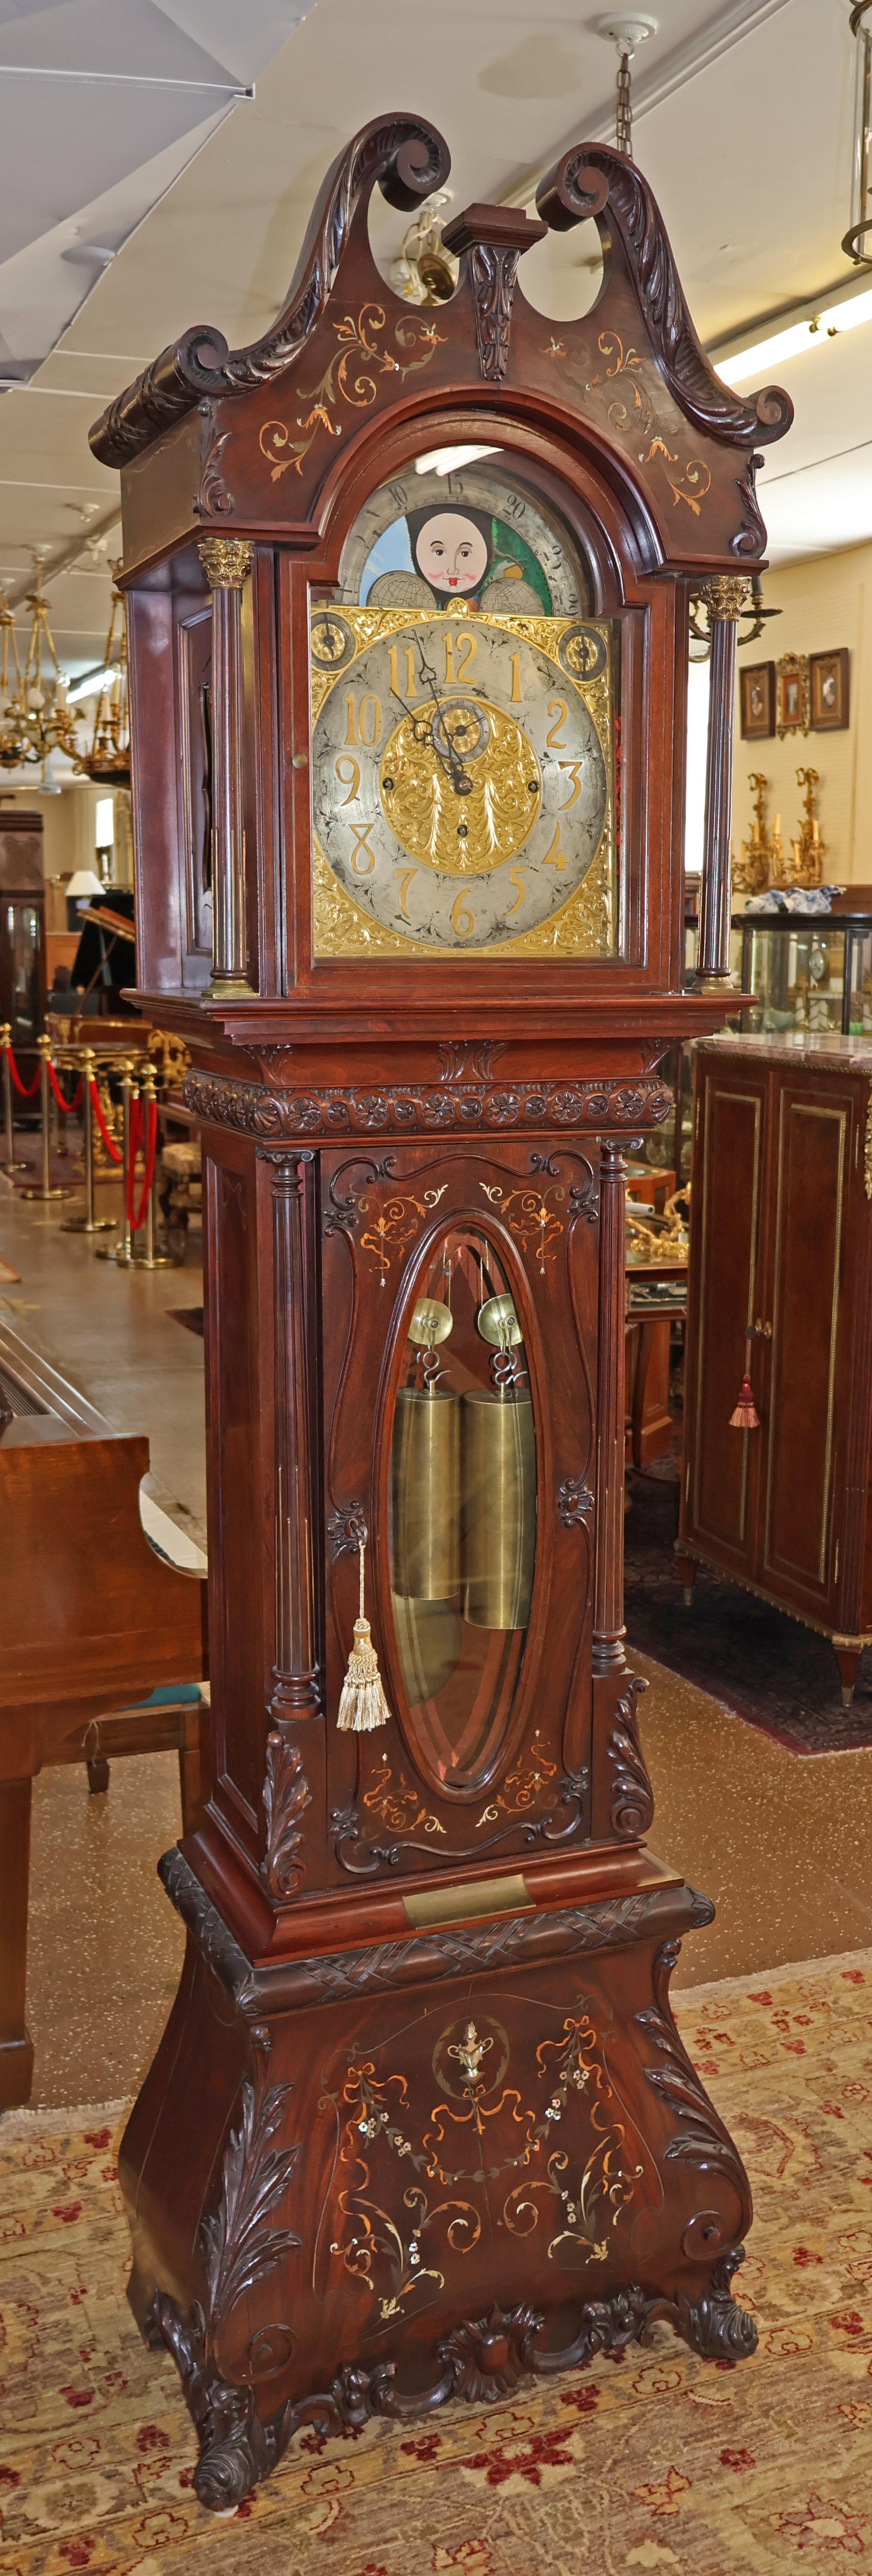 Horloge à grande boîte en laiton incrusté d'acajou et de nacre du 19e siècle de J.J Elliot

Dimensions : 91